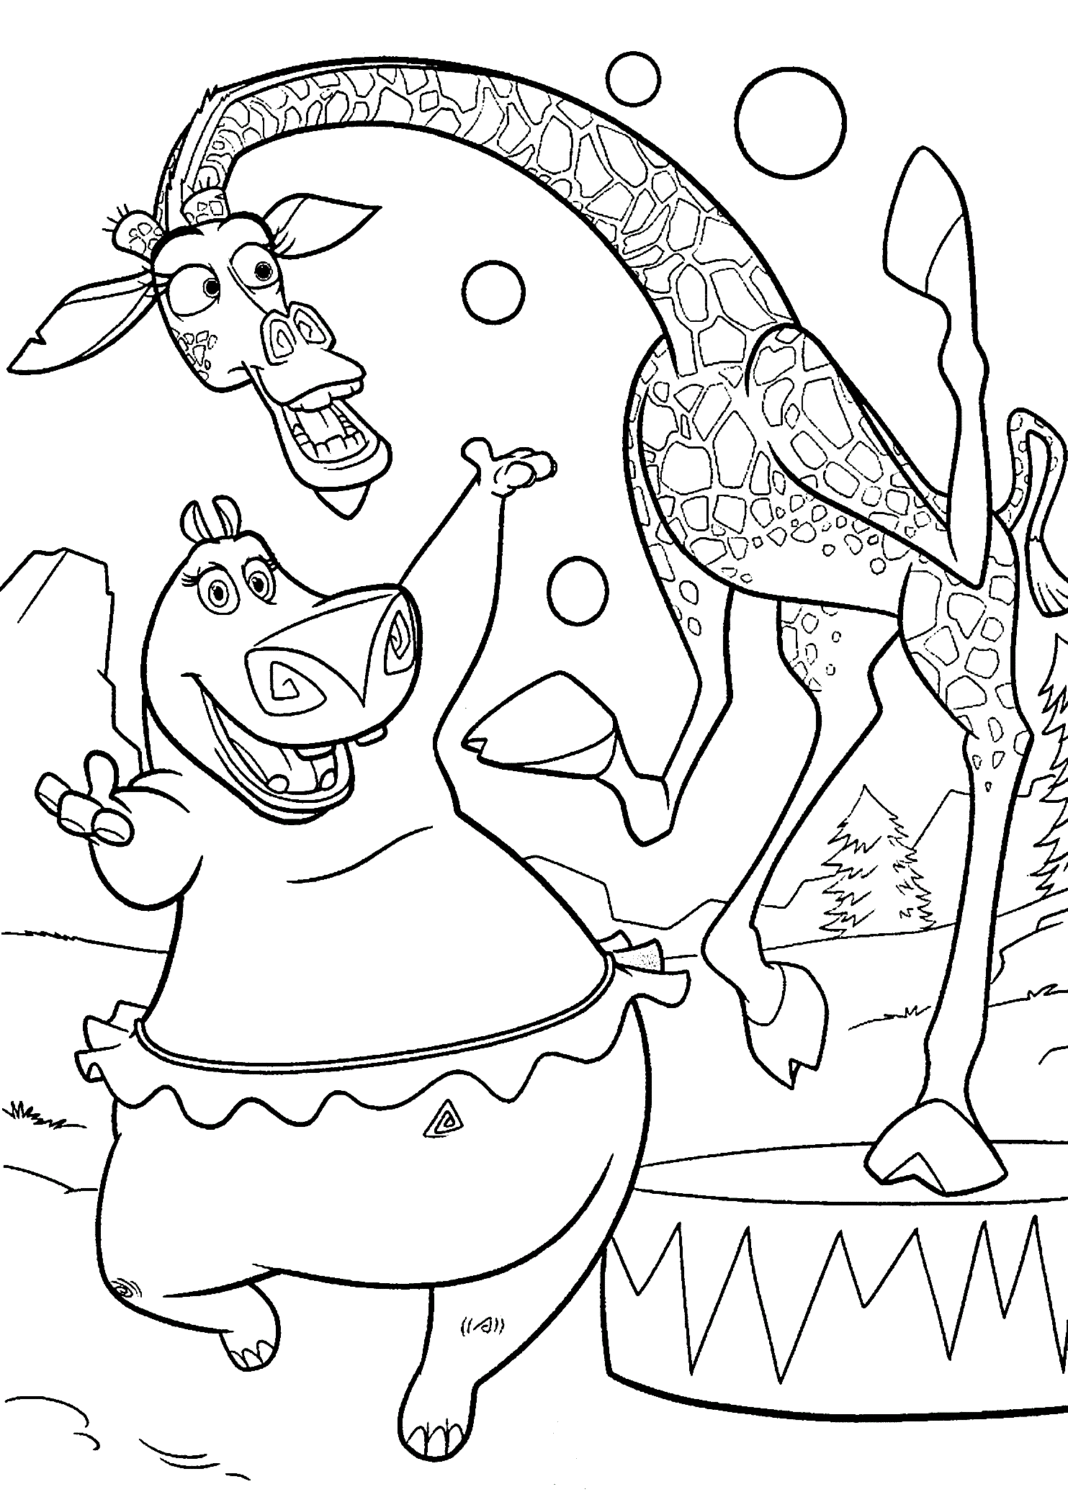 żyrafa i hipopotam z magadaskar kolorowanka do drukowania